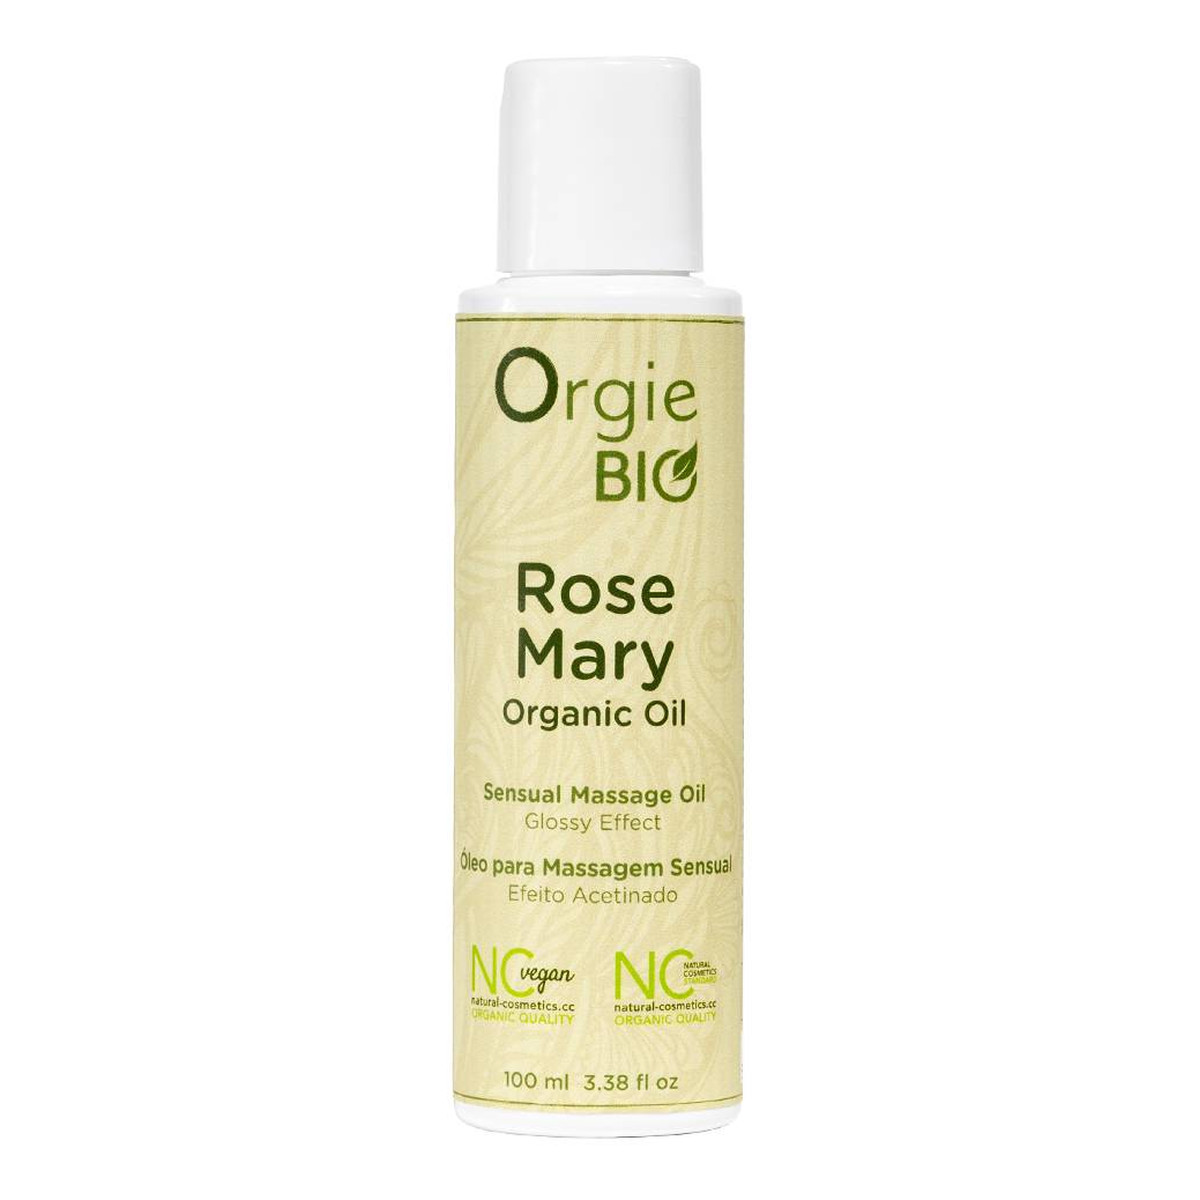 Orgie Bio Rose Mary Organic Oil organiczny Olejek do masażu 100ml